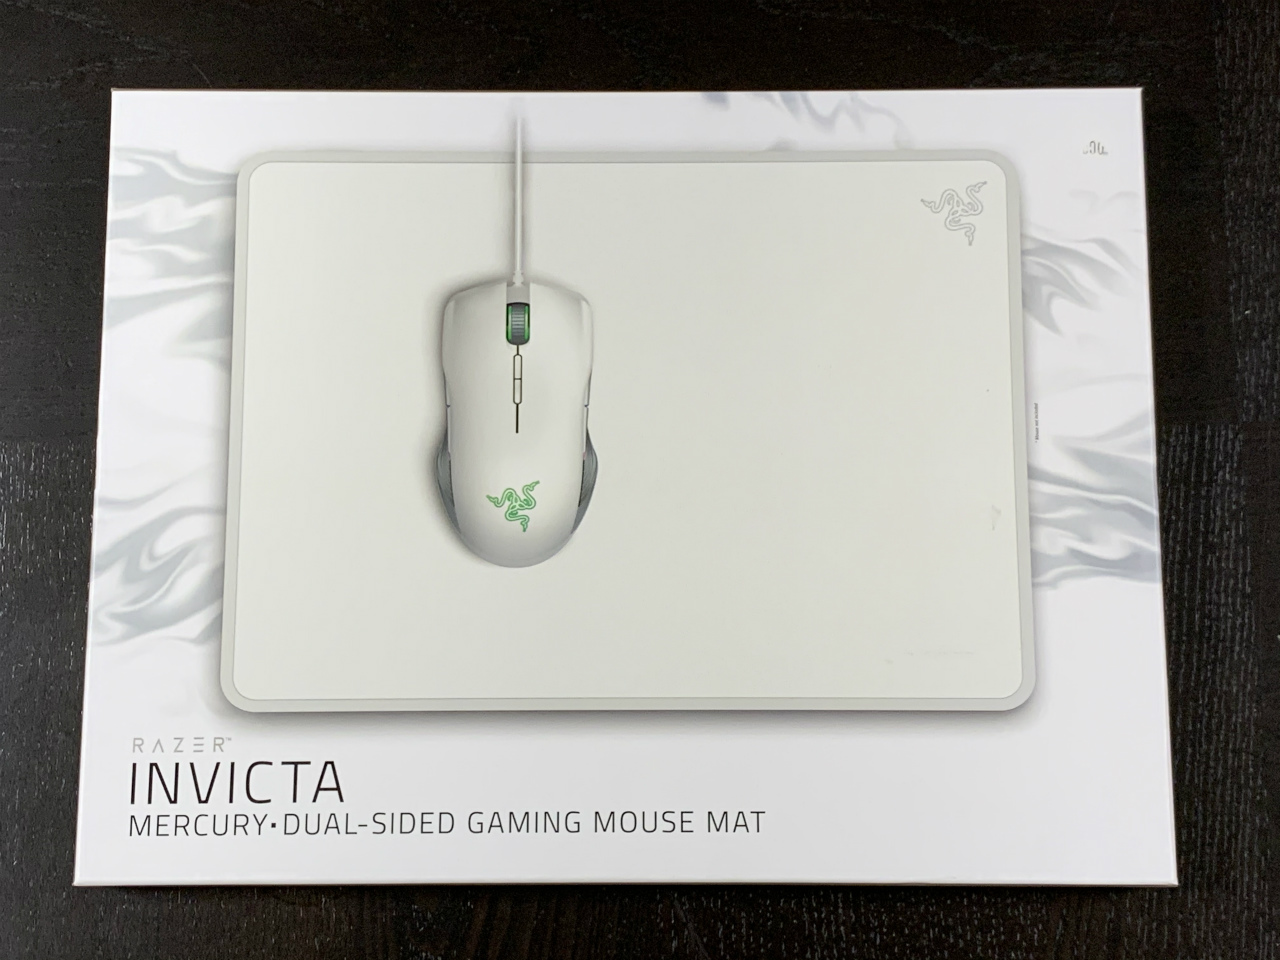 質実剛健な白いマウスパッドrazer Invicta Mercuryを衝動買い 1 5流